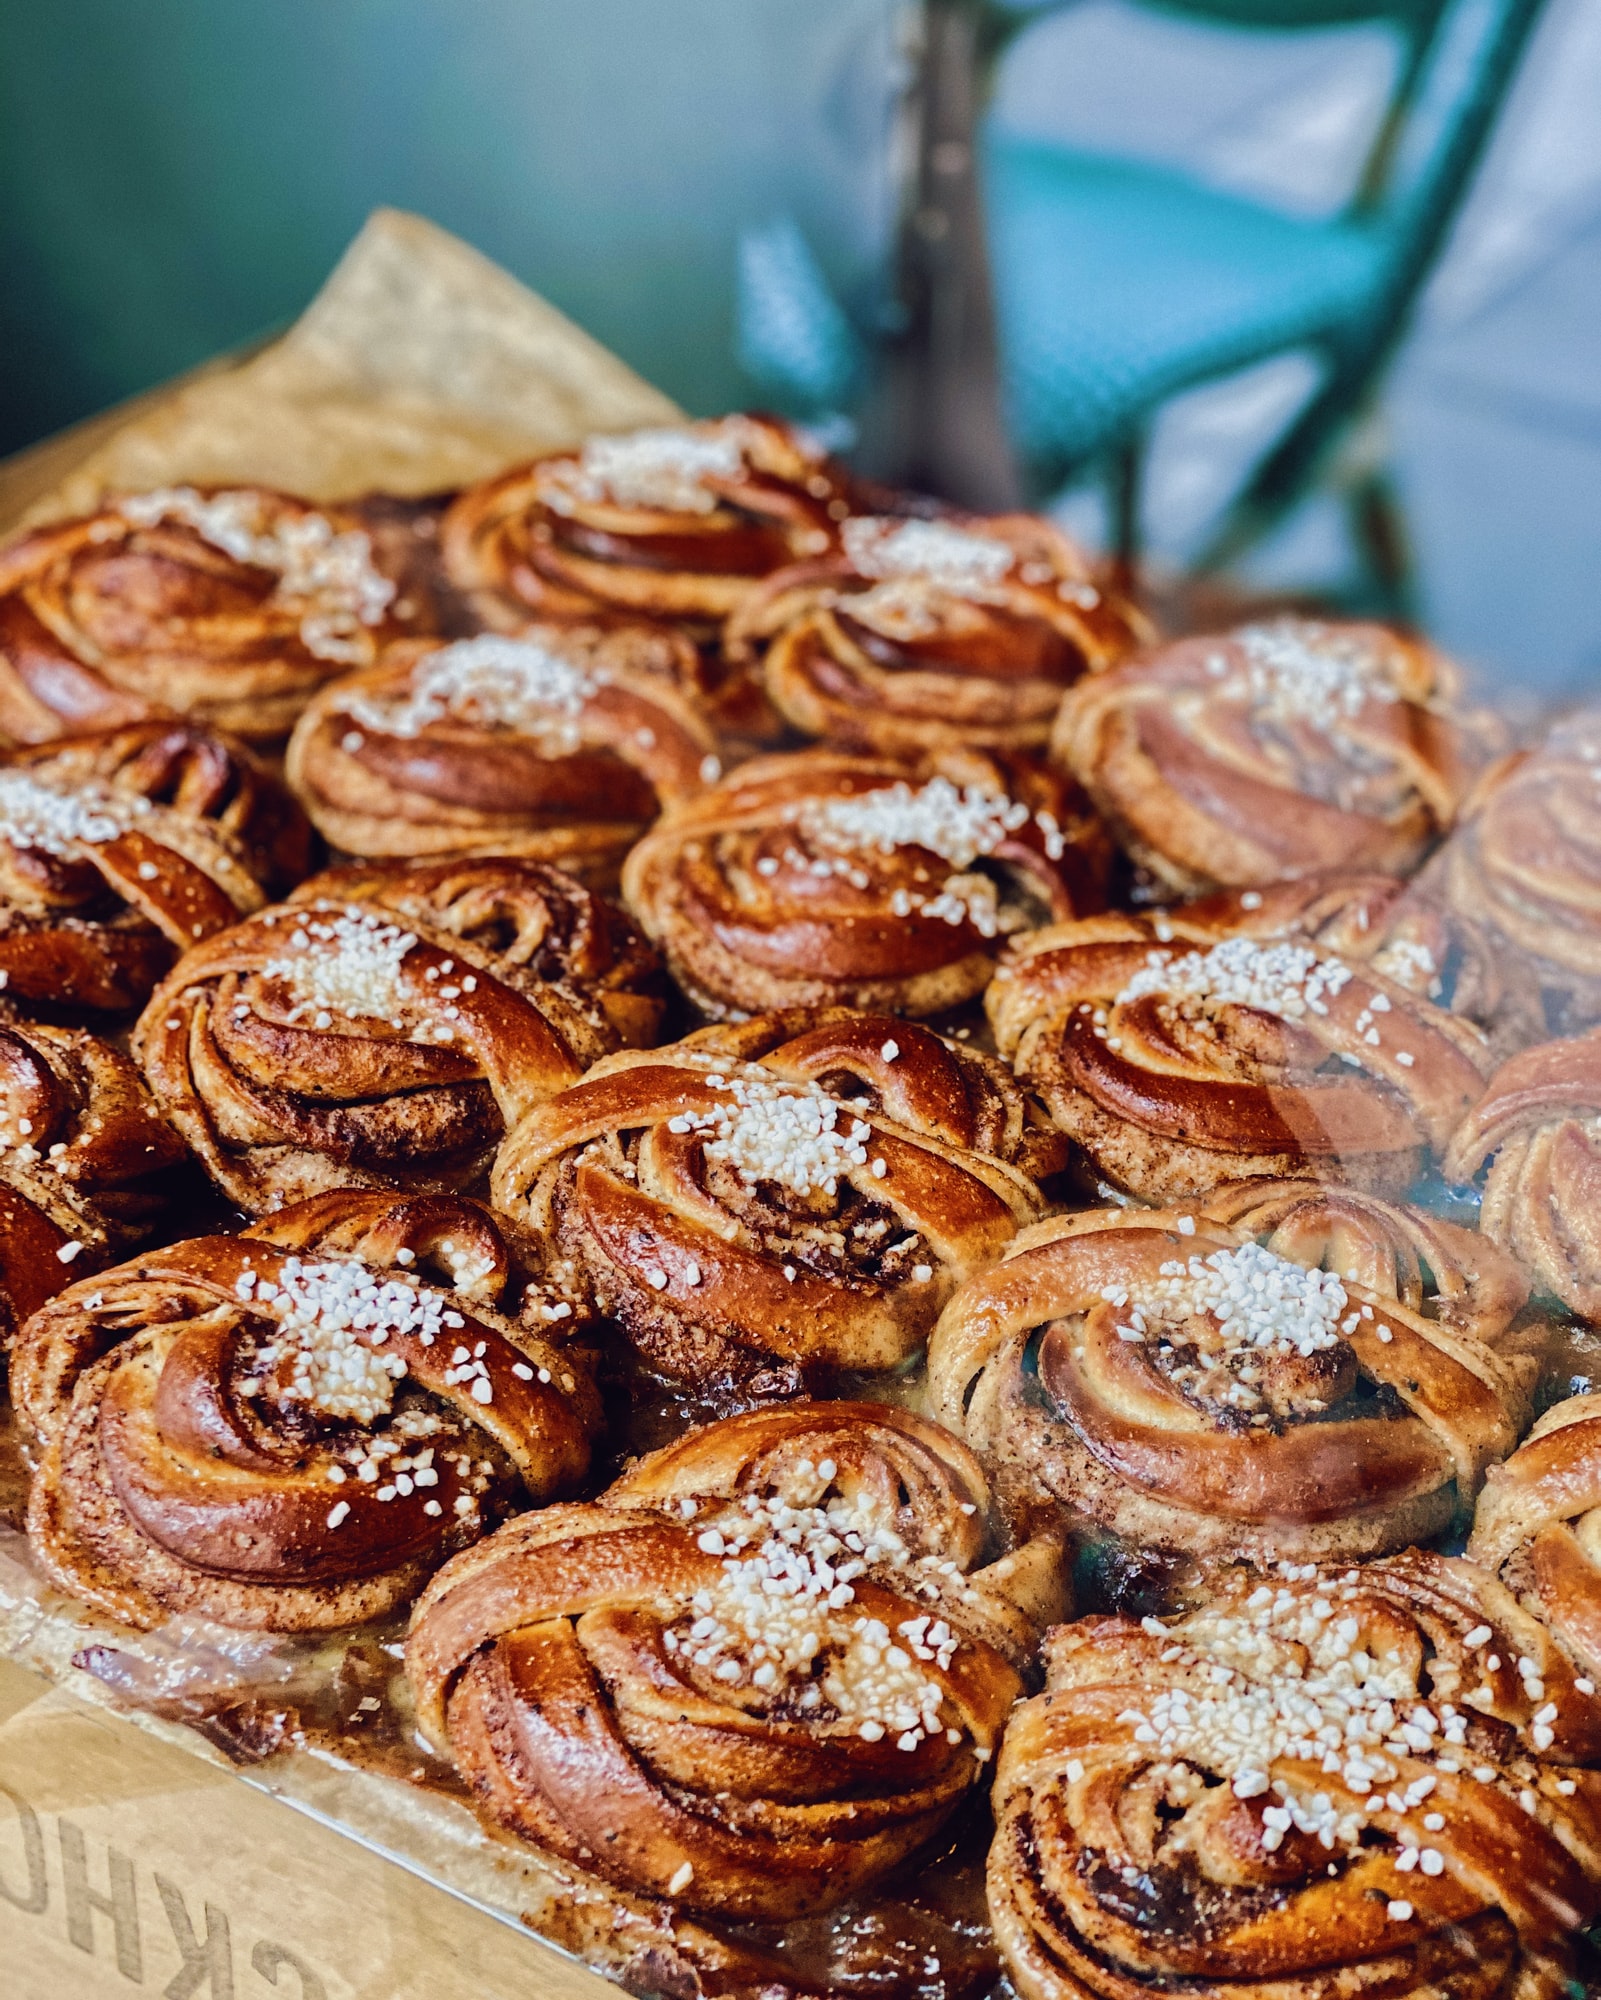 Freshly baked kanelsnegl - Danish Cinnamon rolls - in a shop window.